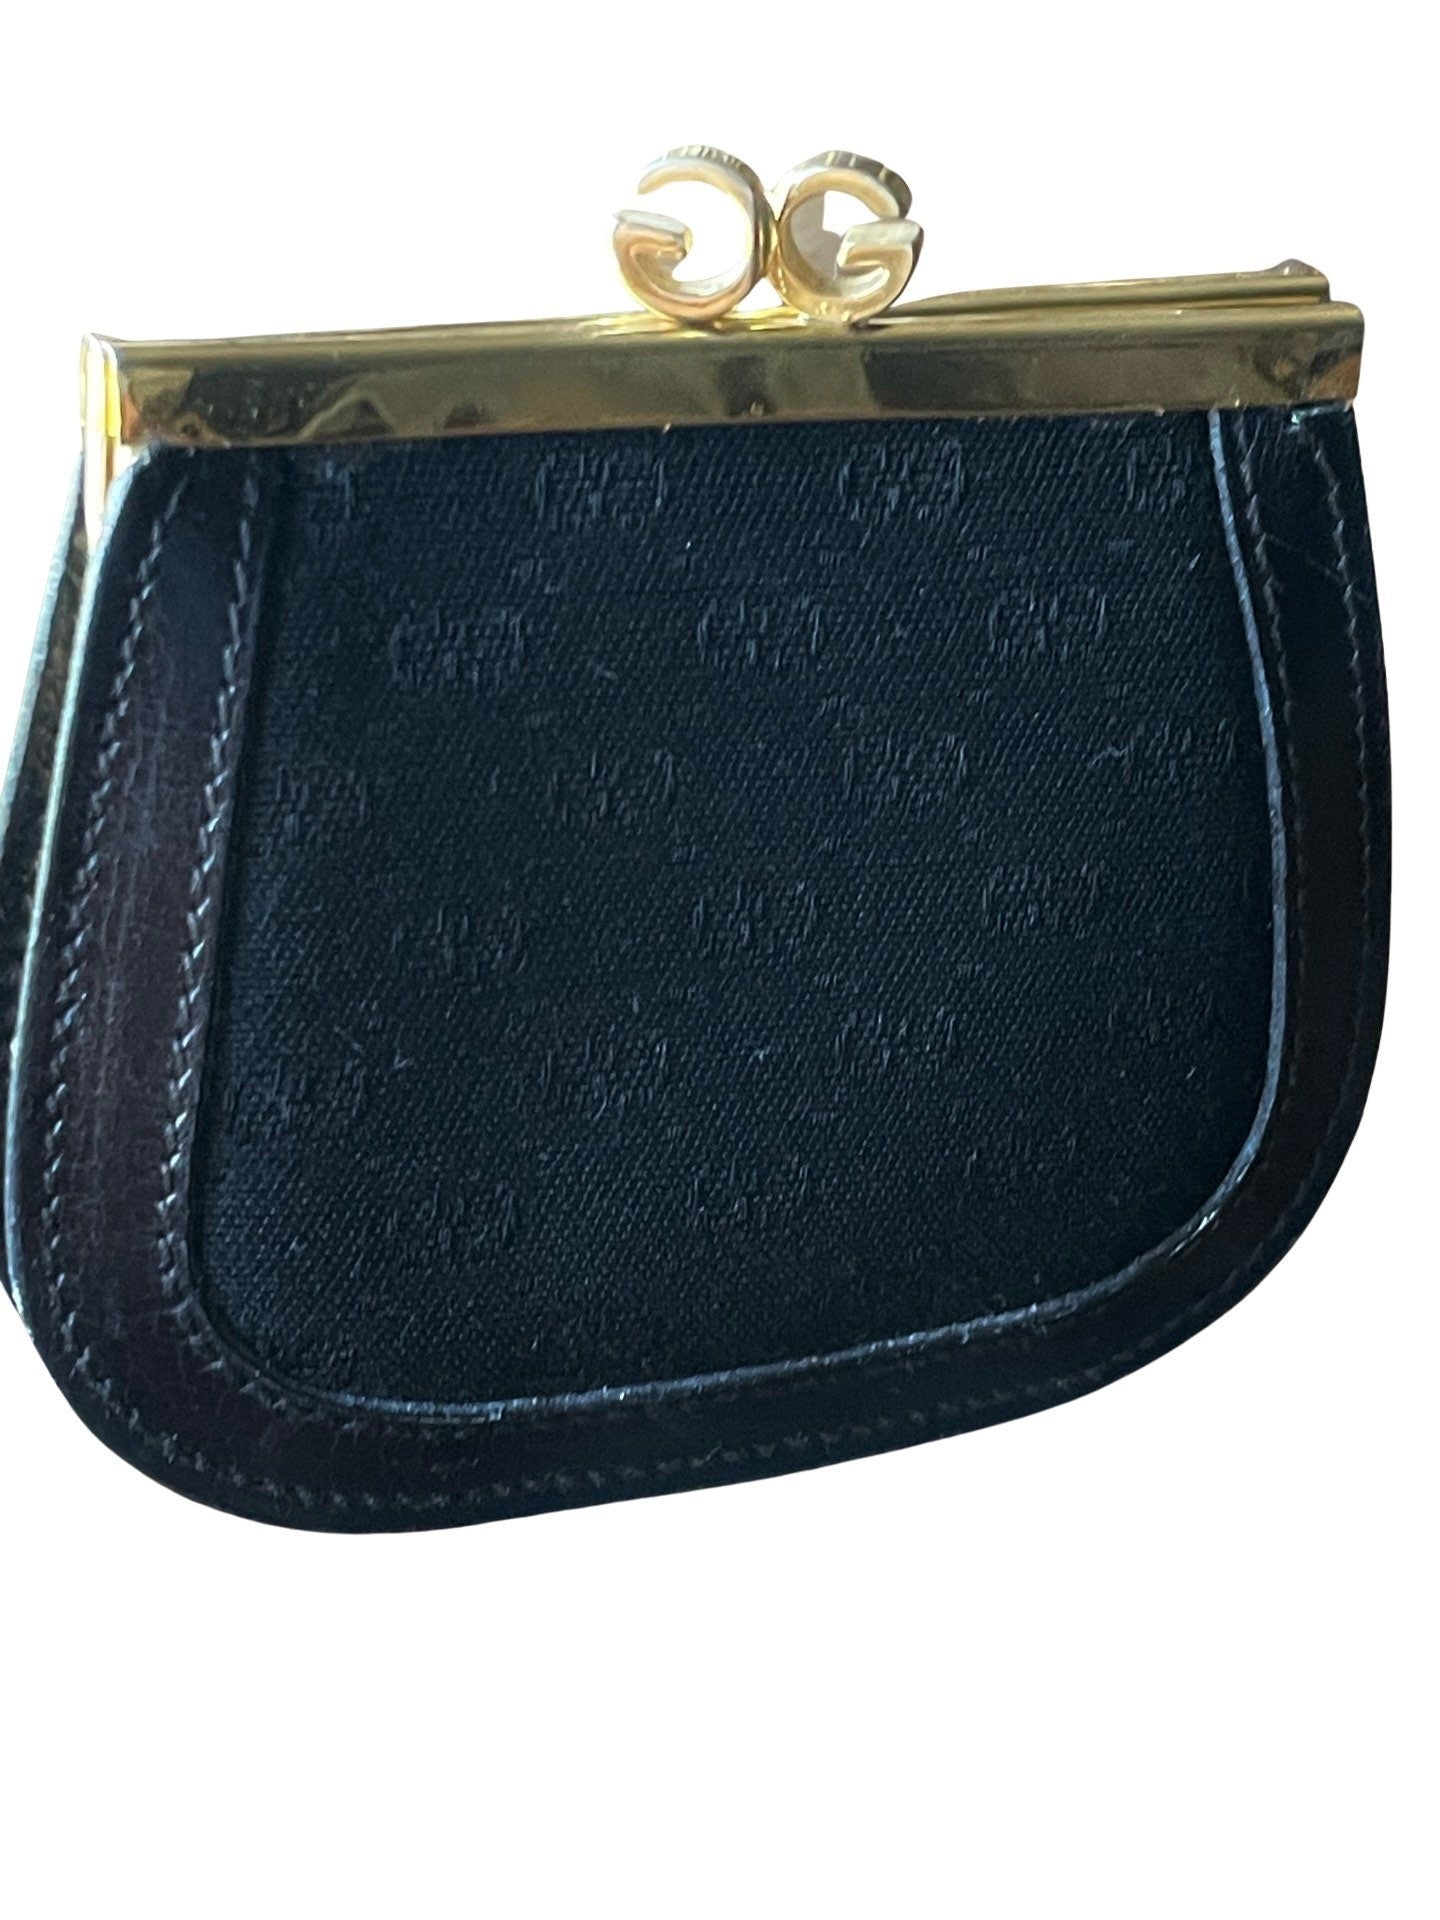 Vintage Gucci Monogram Pocket Mirror Compact